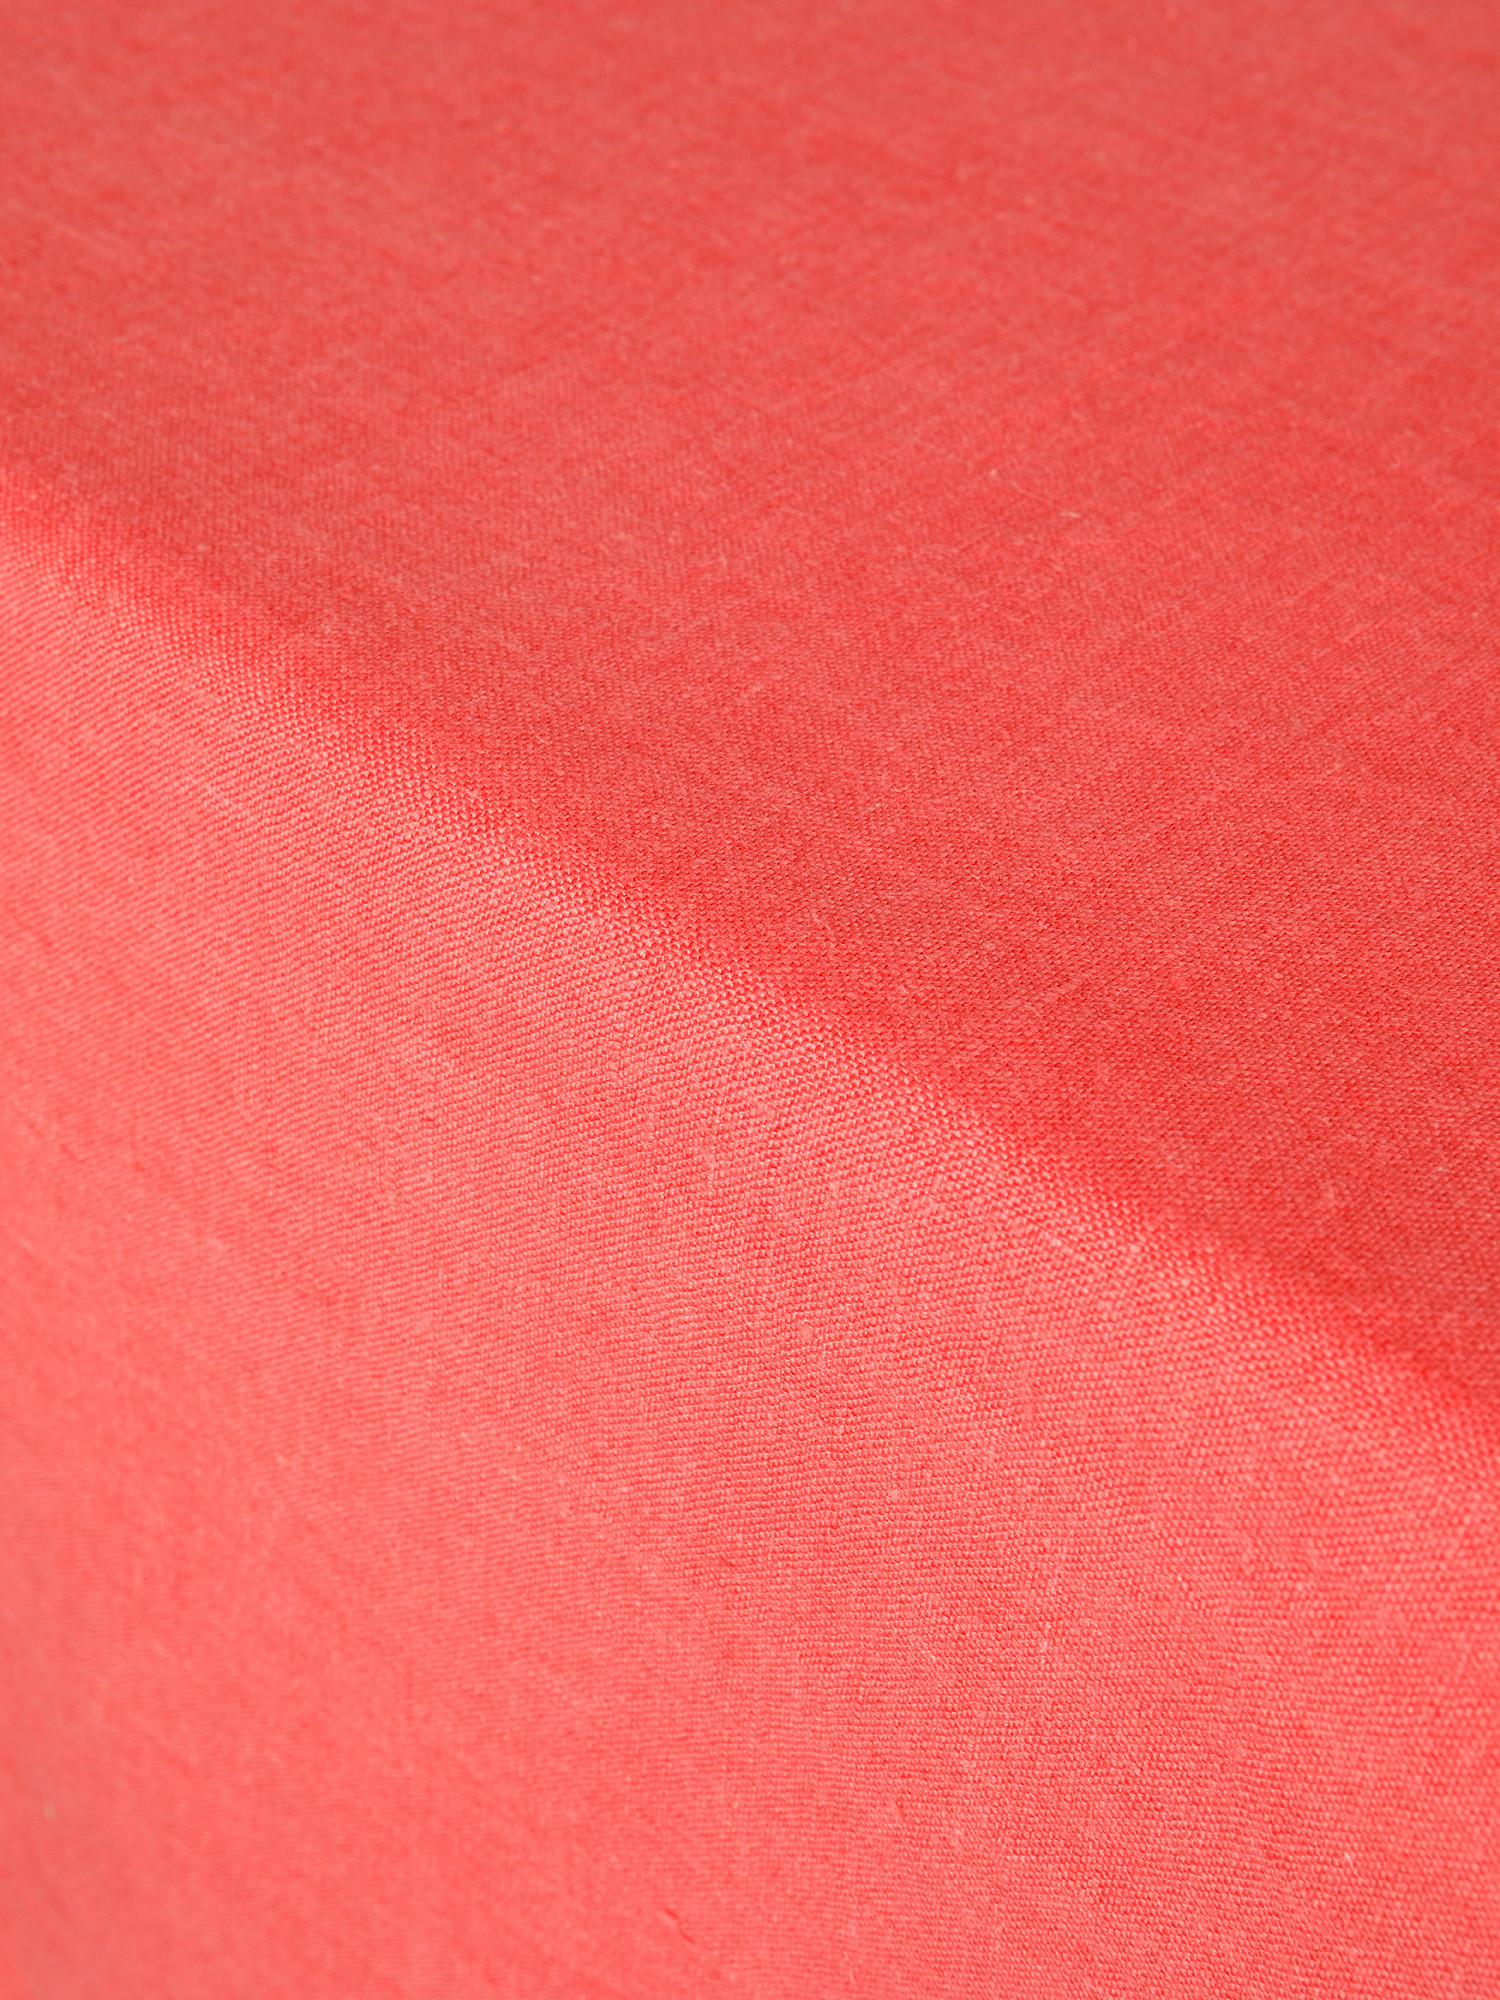 Tovaglia puro lino lavato tinta unita, Rosso corallo, large